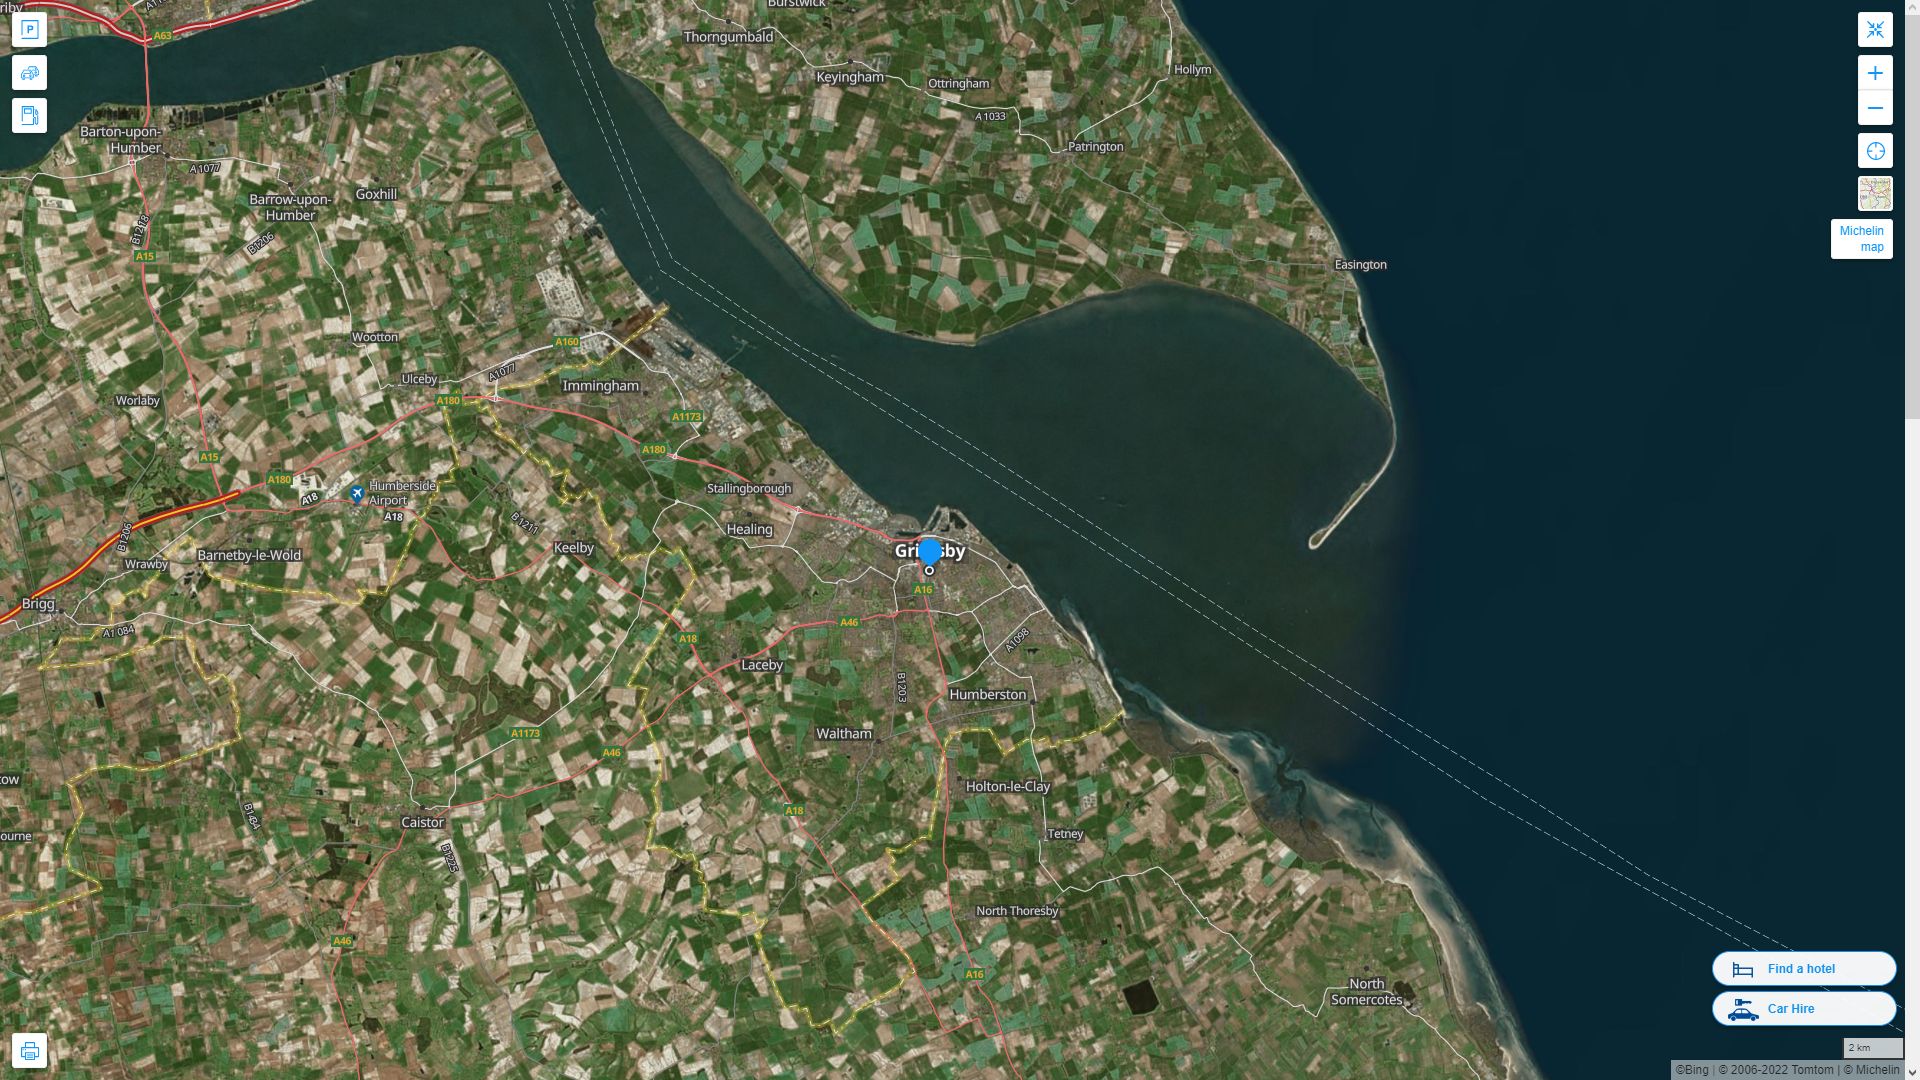 Grimsby Royaume Uni Autoroute et carte routiere avec vue satellite